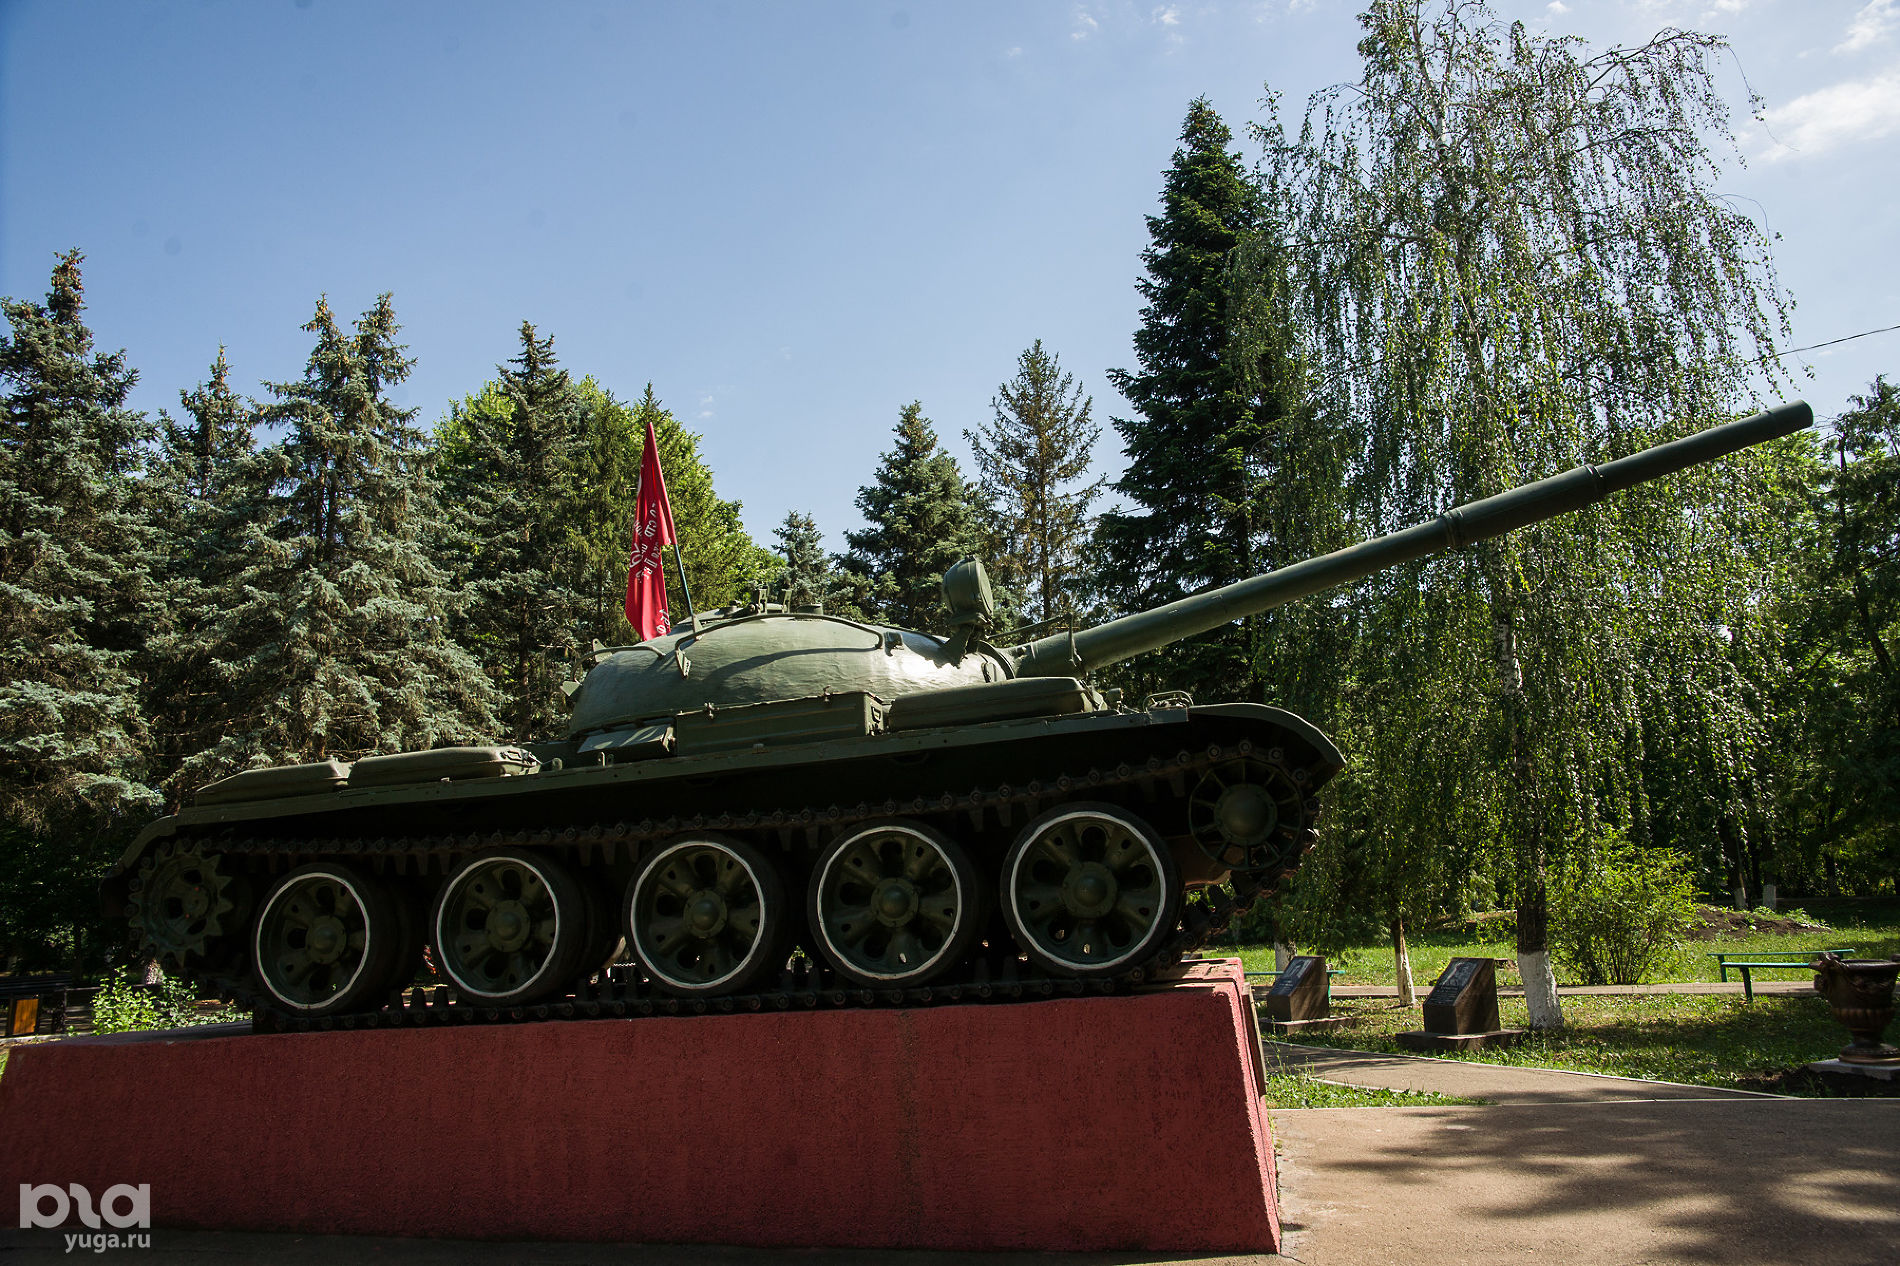 Памятник воинам-танкистам — освободителям Кубани, поселок Колосистый © Фото Евгения Мельченко, Юга.ру